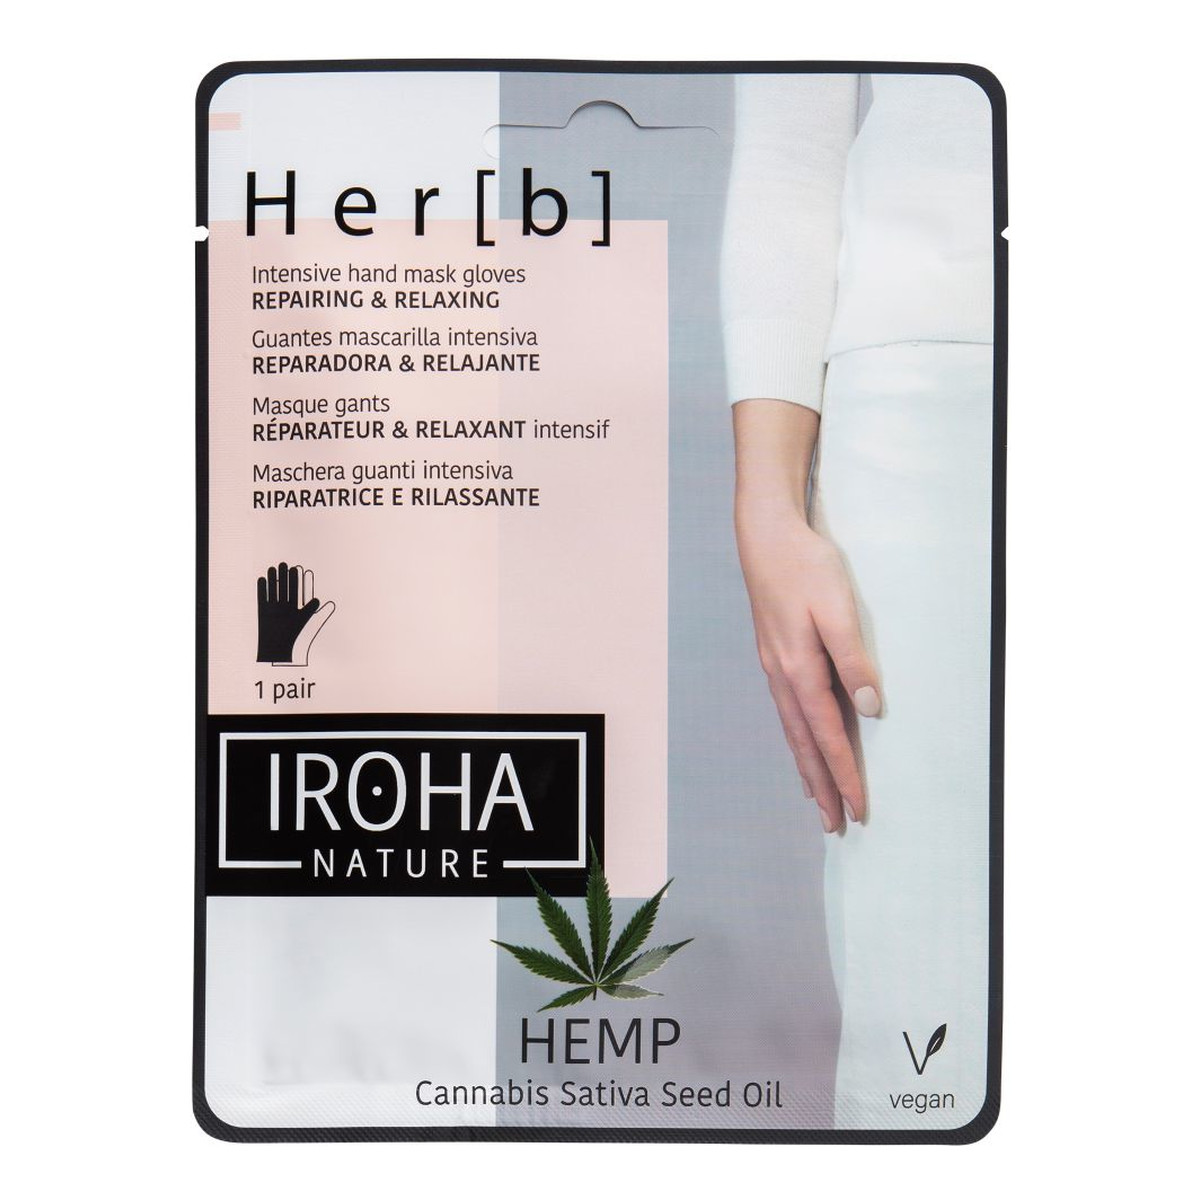 Iroha Nature Repairing & Relaxing Hand & Nail Mask naprawczo-relaksacyjna maseczka w płachcie do dłoni i paznokci Cannabis 2x8g 16